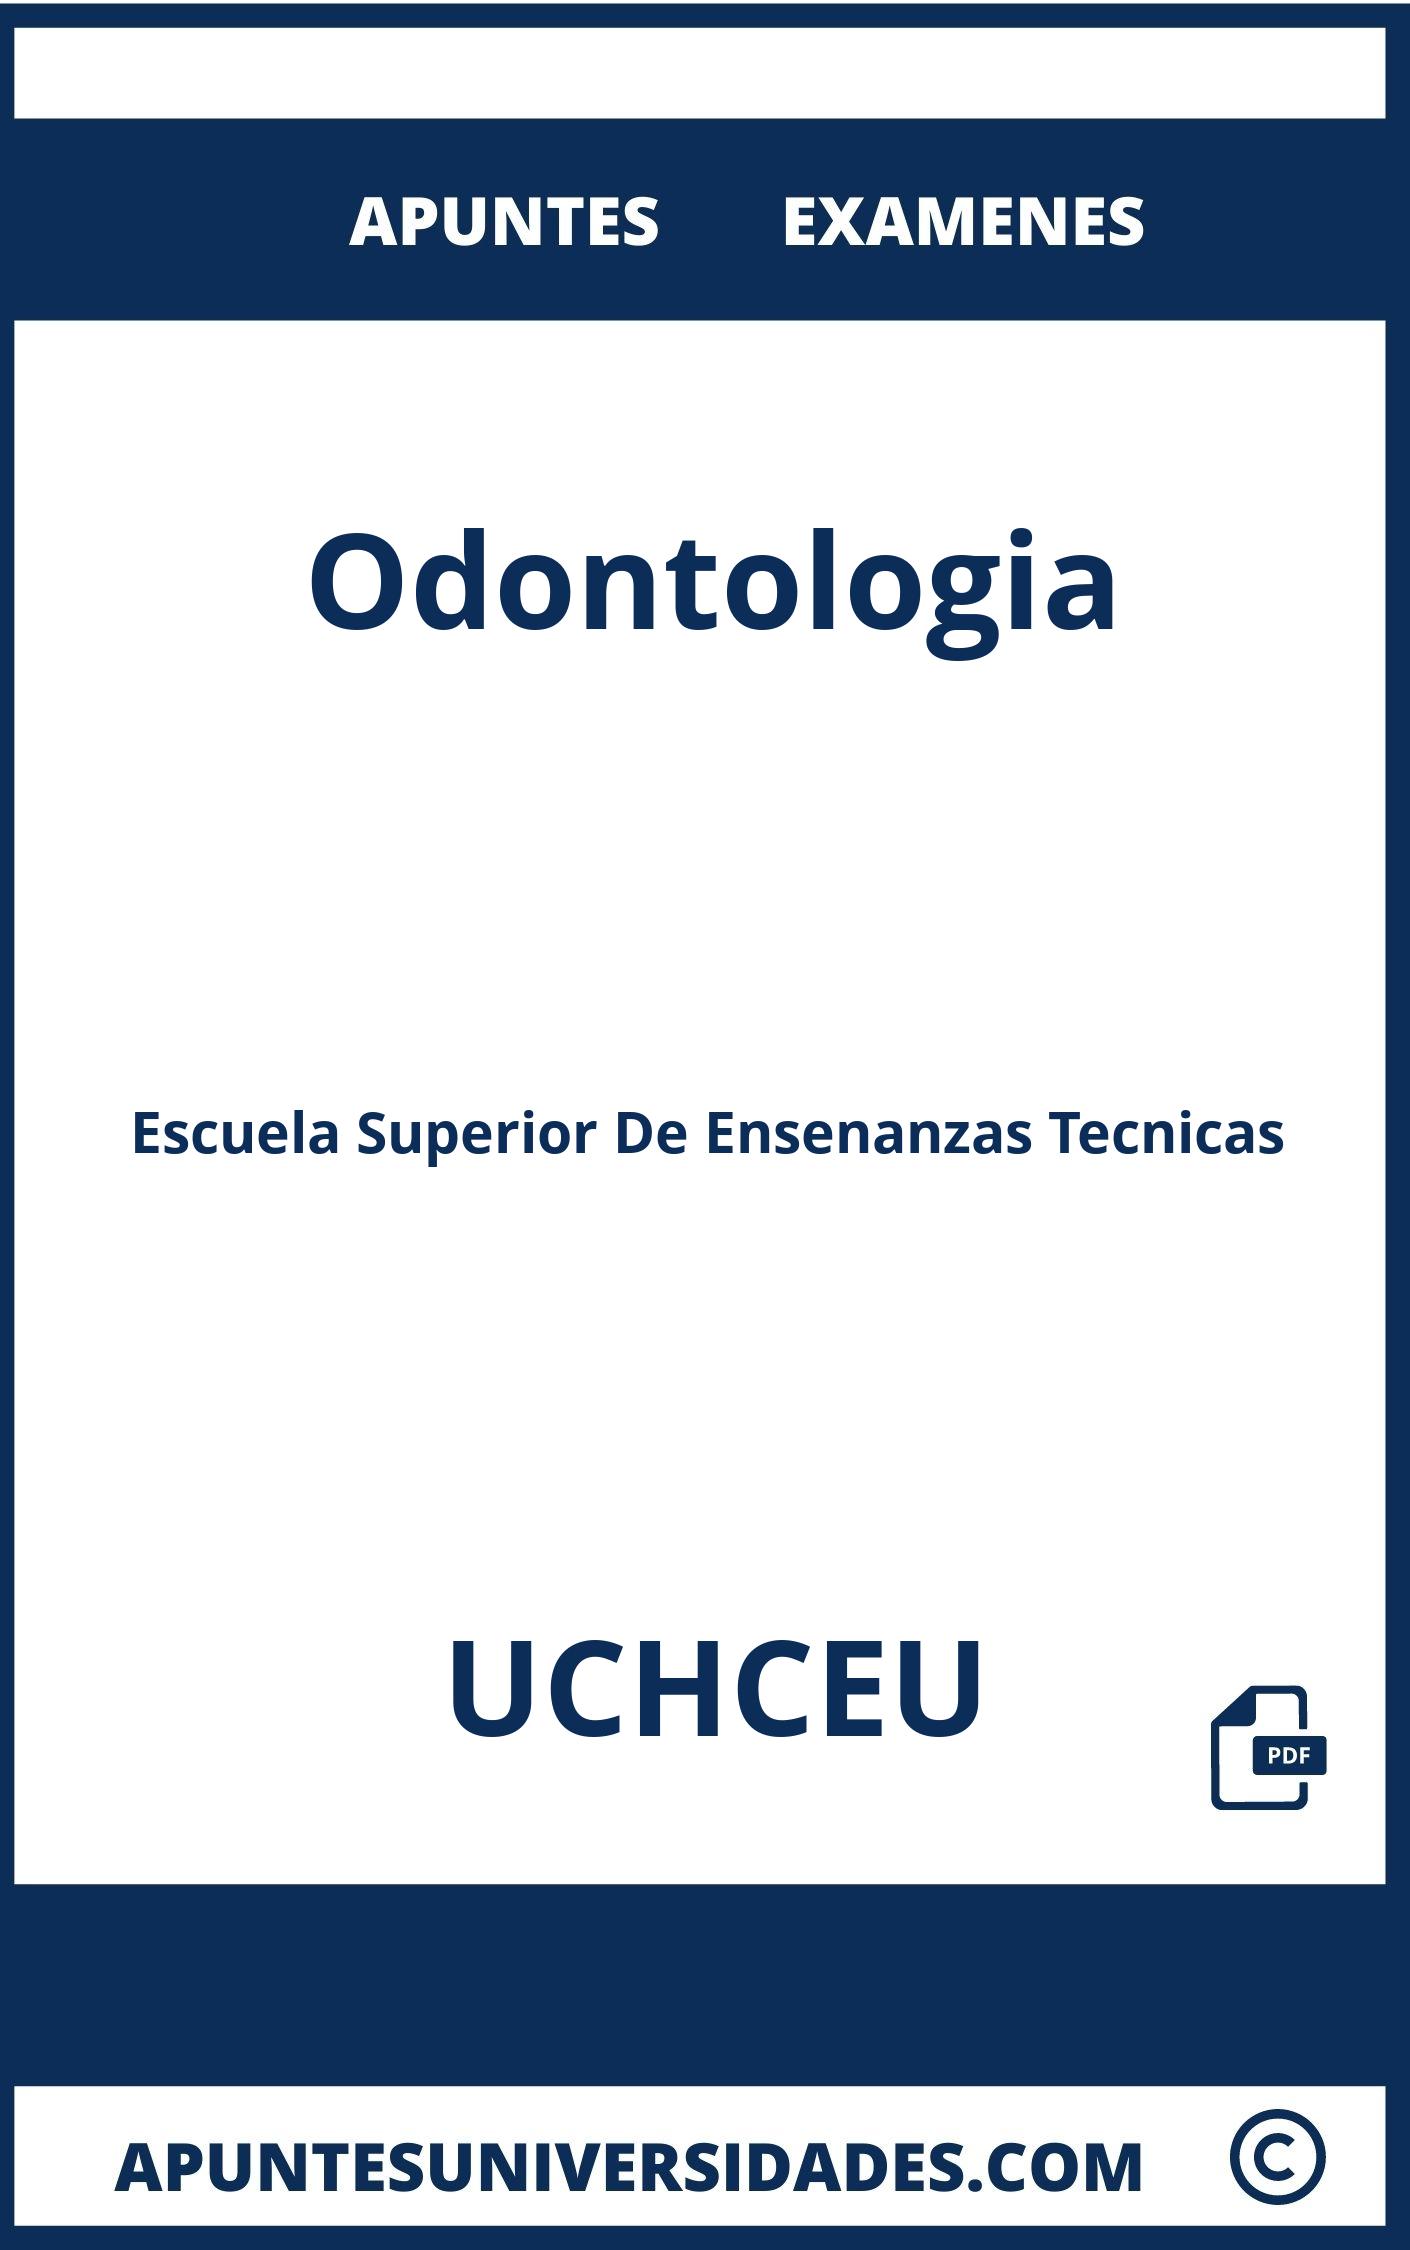 Apuntes y Examenes Odontologia UCHCEU